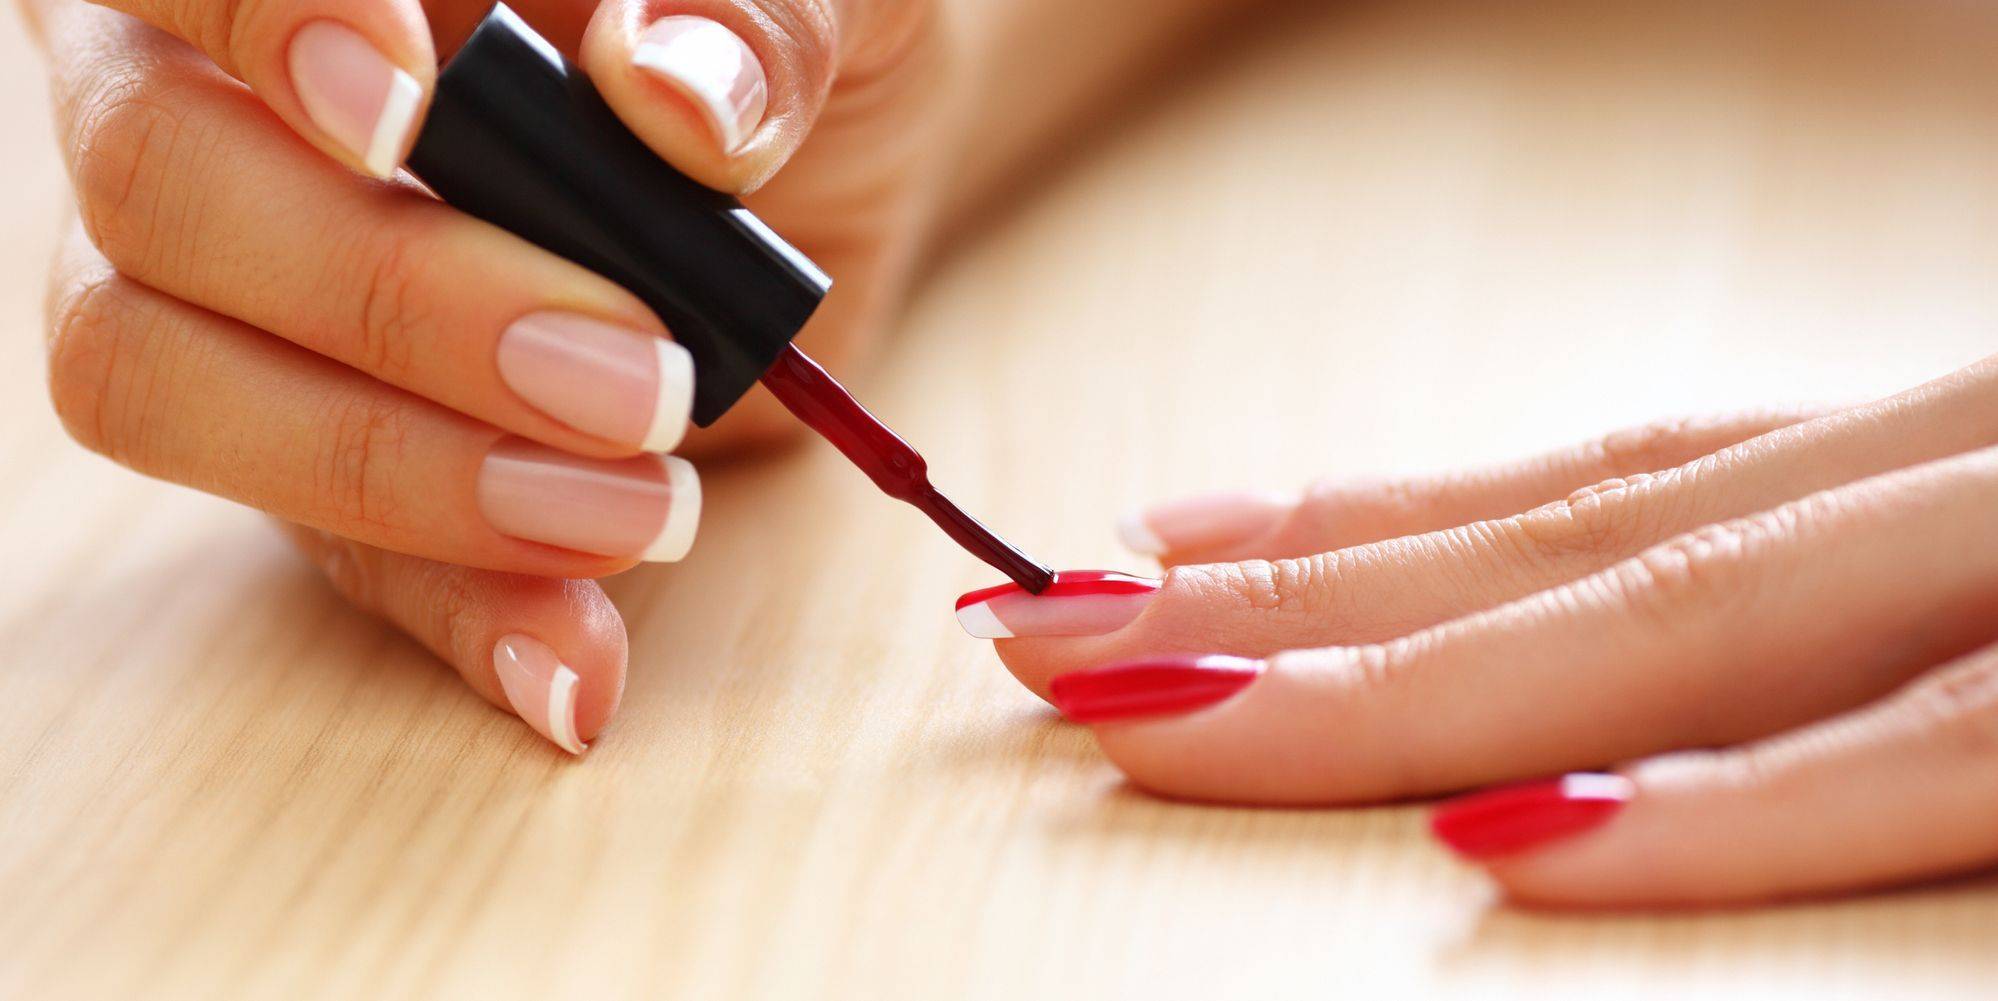 Как часто можно красить ногти гель-лаком без вреда? | красивые ногти - дополнение твоего образа